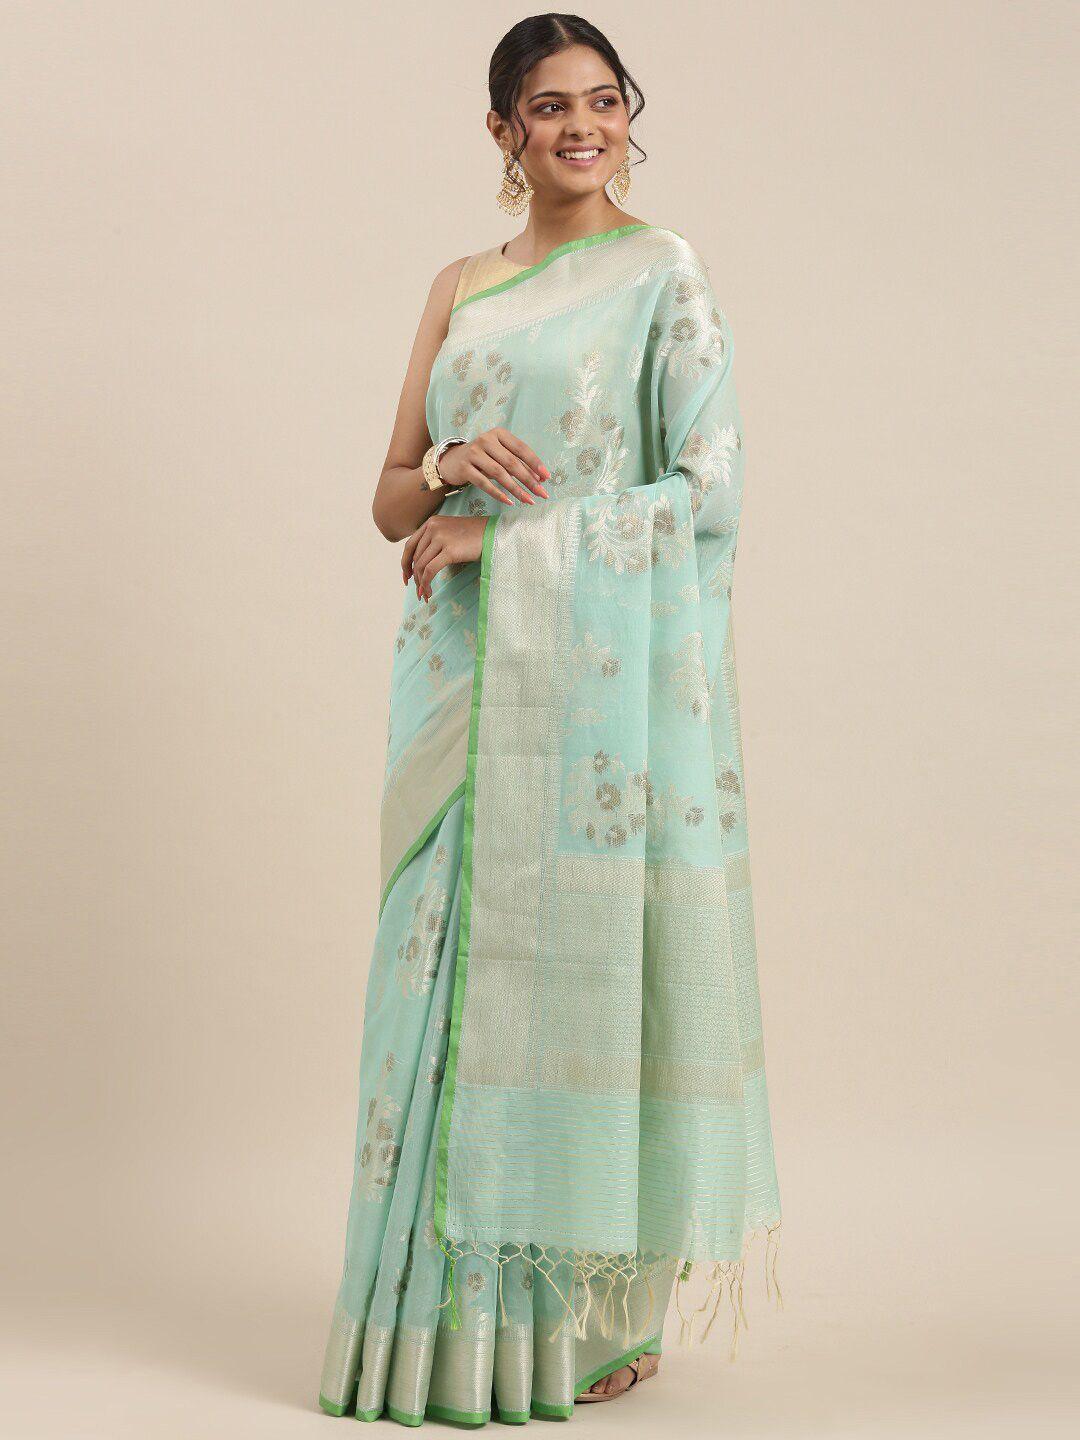 ptiepl banarasi silk works sea green & brown floral zari banarasi saree